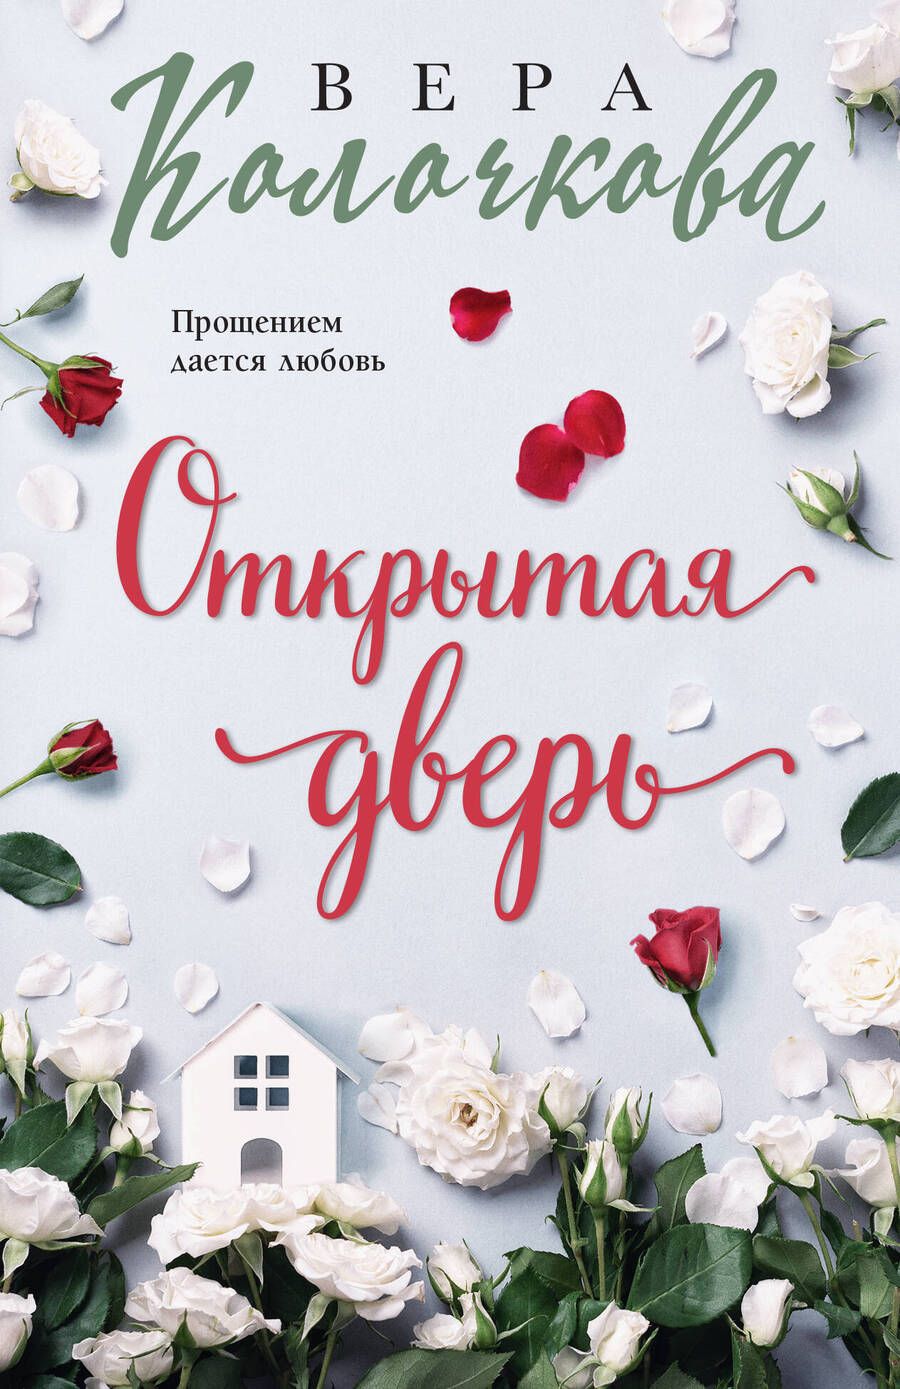 Обложка книги "Колочкова: Открытая дверь"